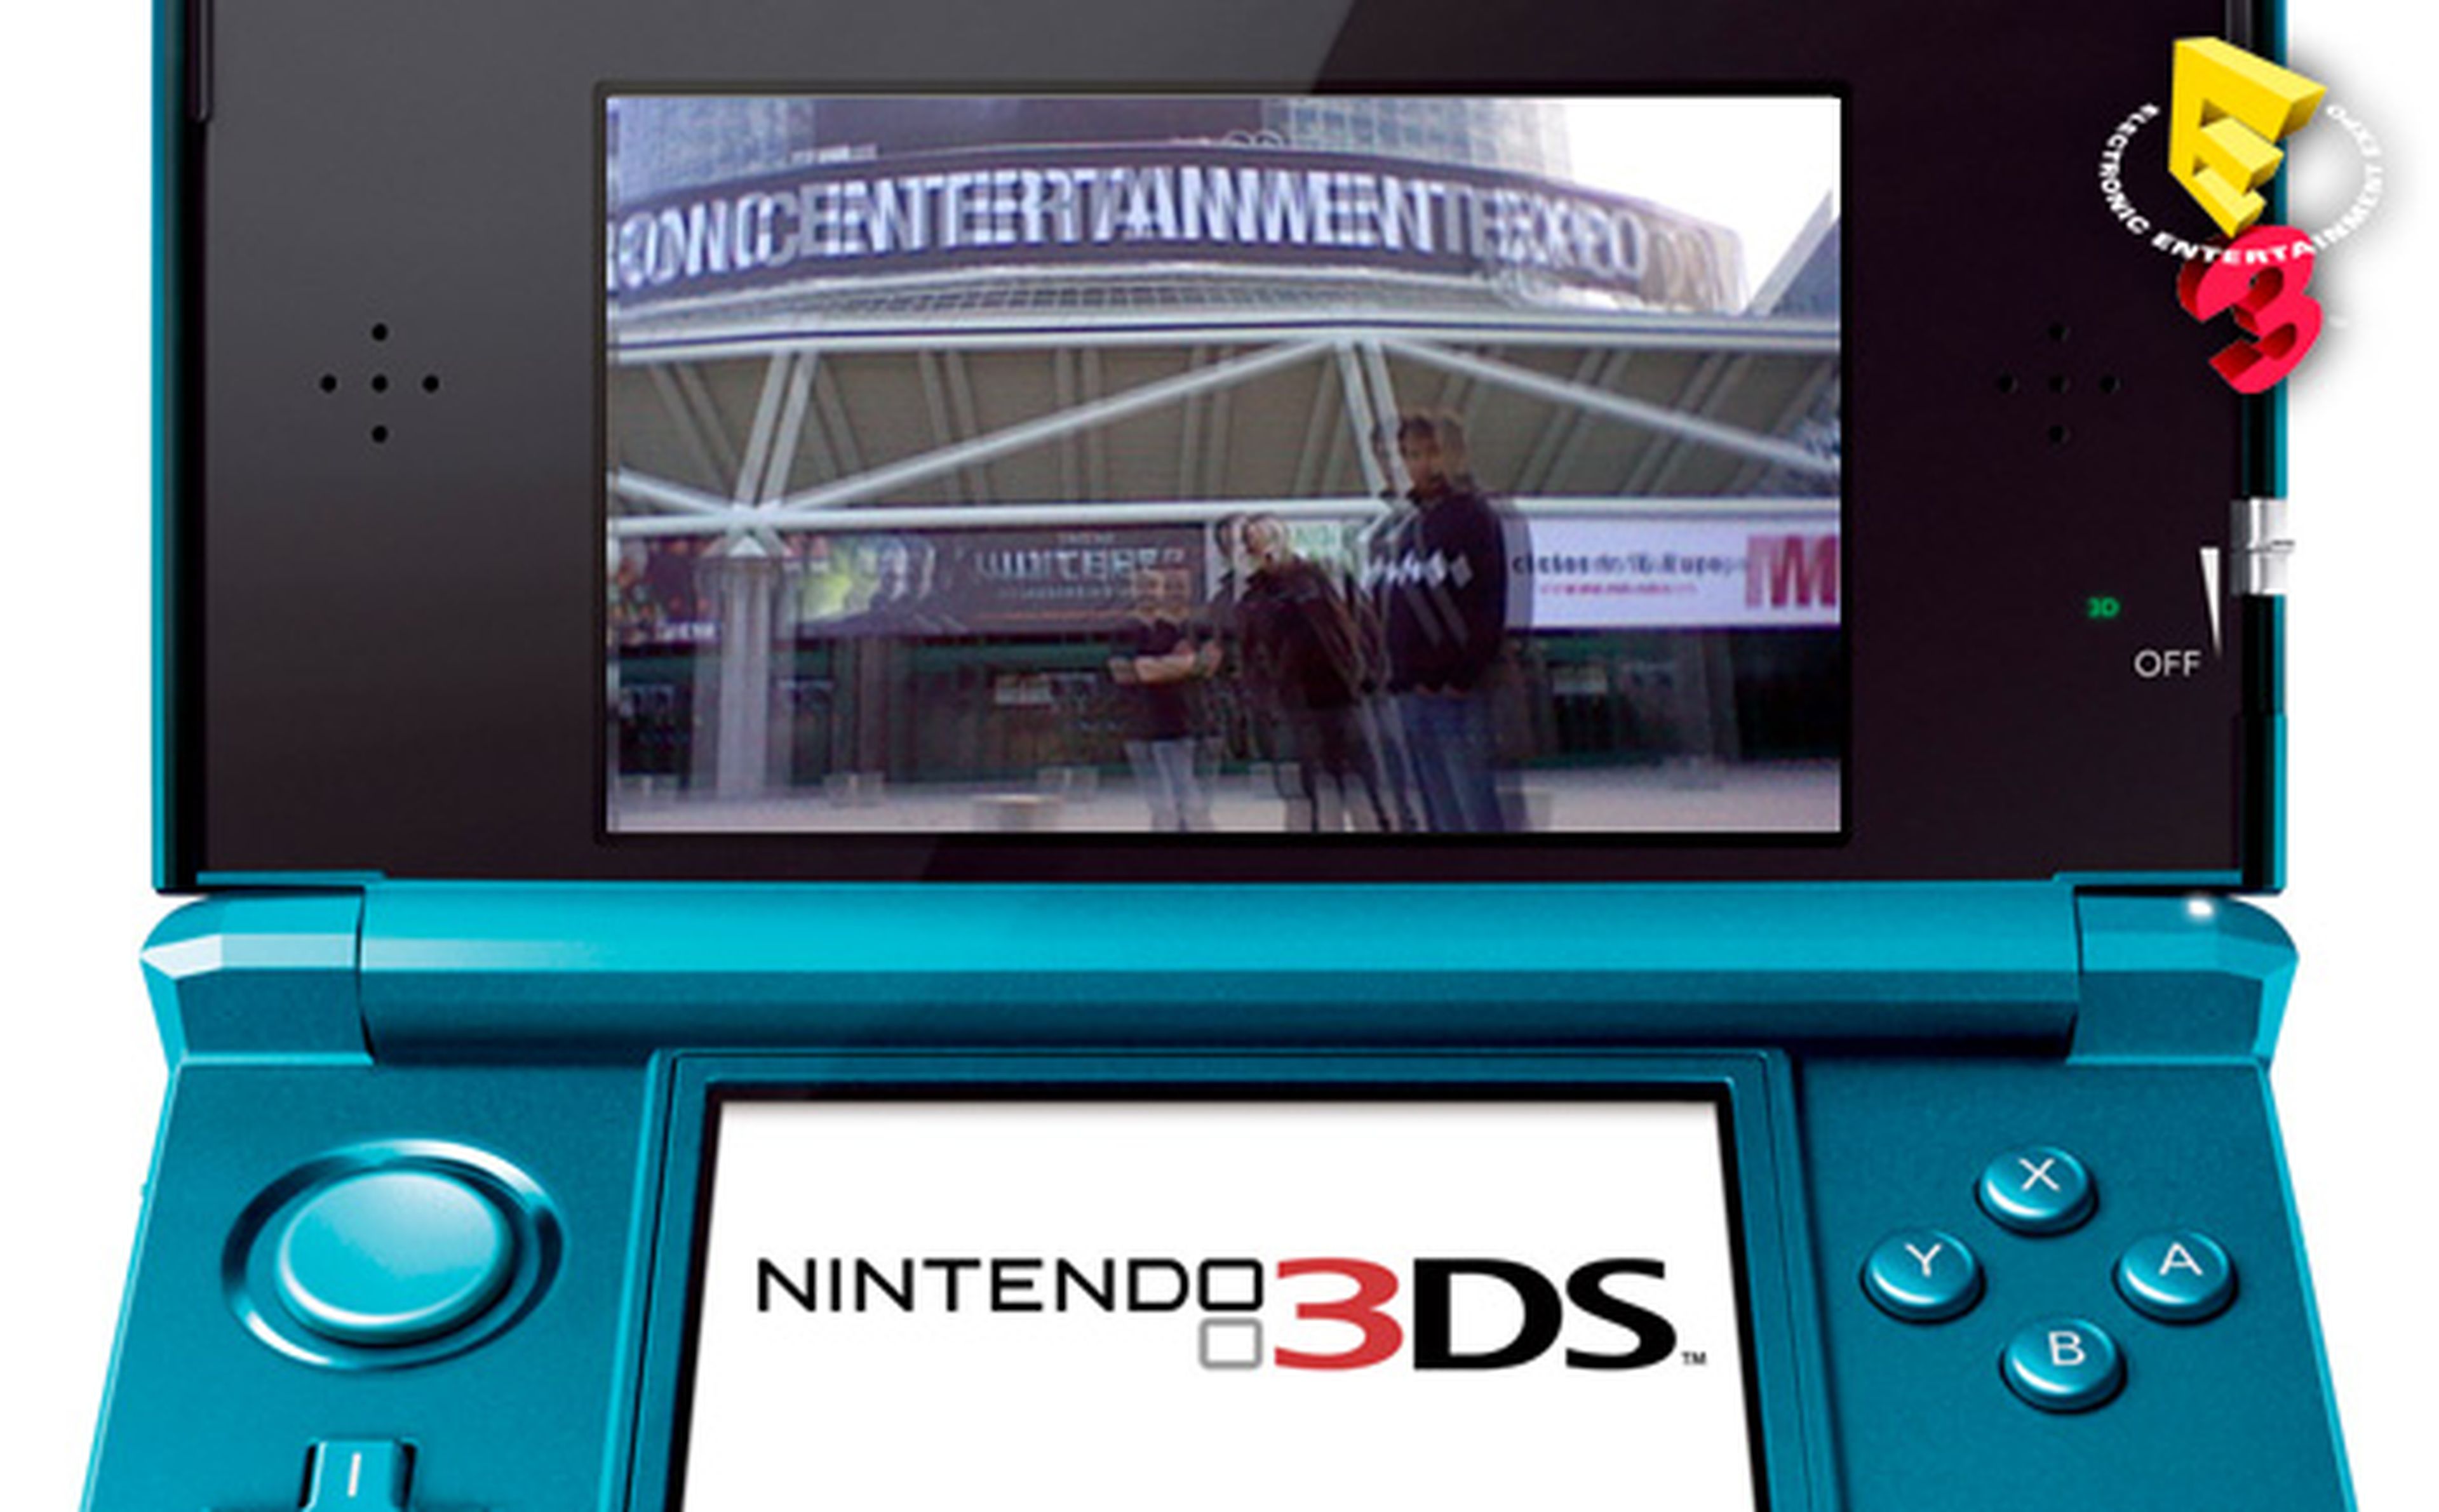 ¿Quieres ver el E3 en 3D en tu 3DS?